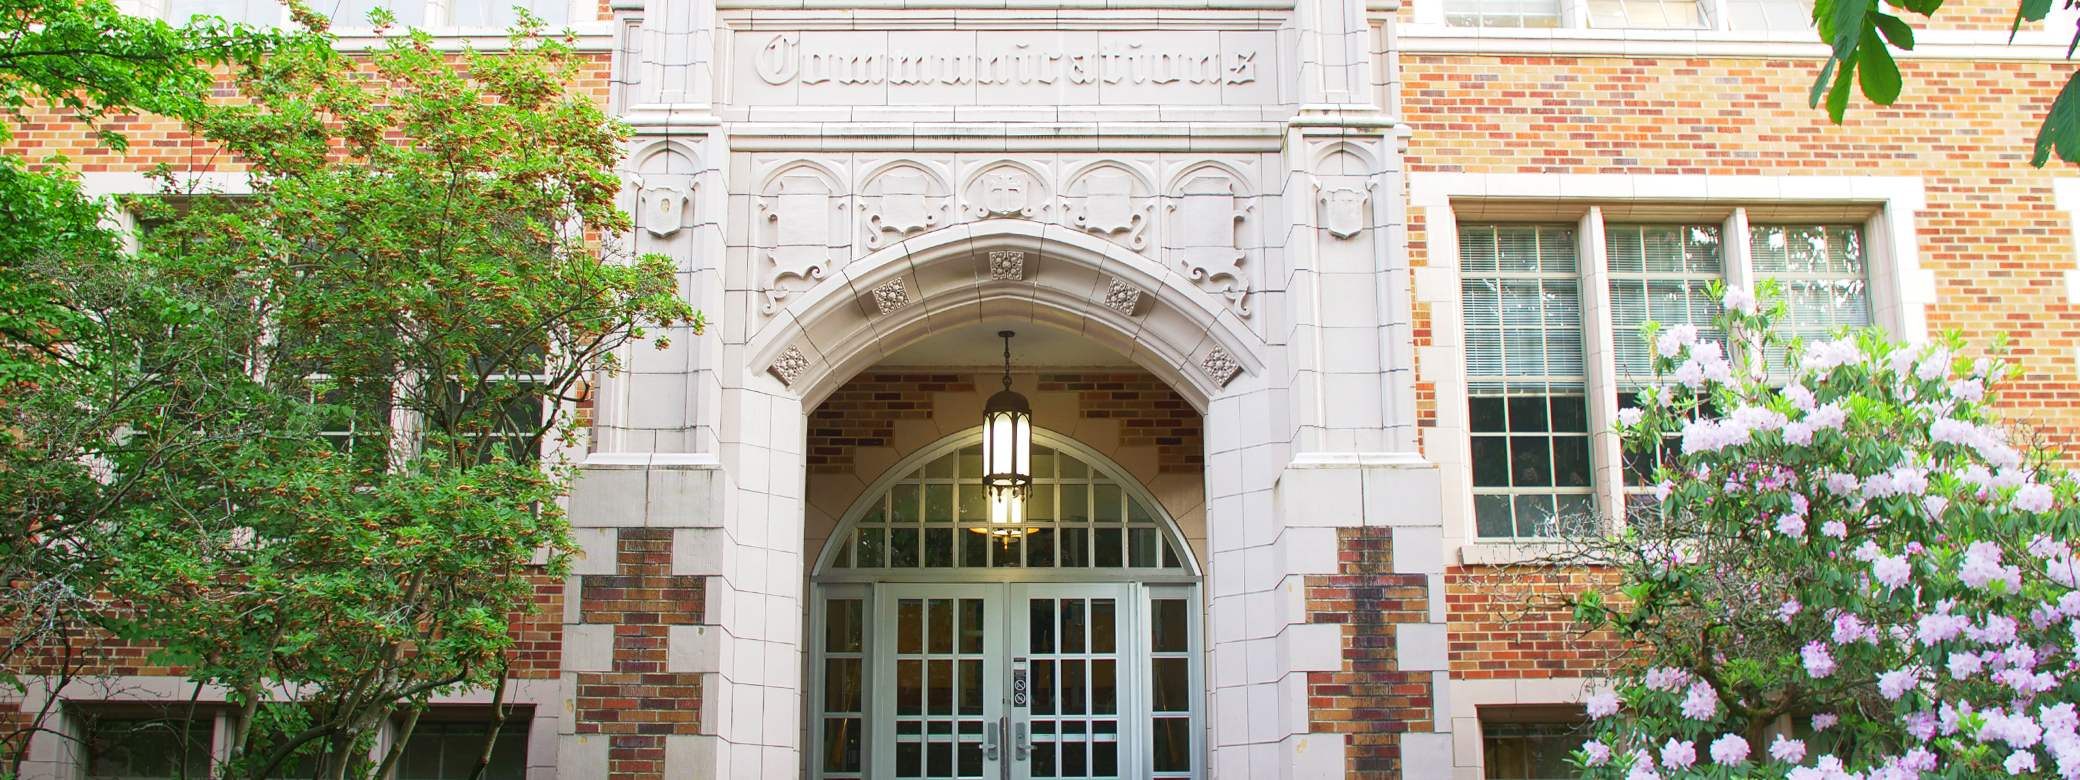 Doorway to campus building